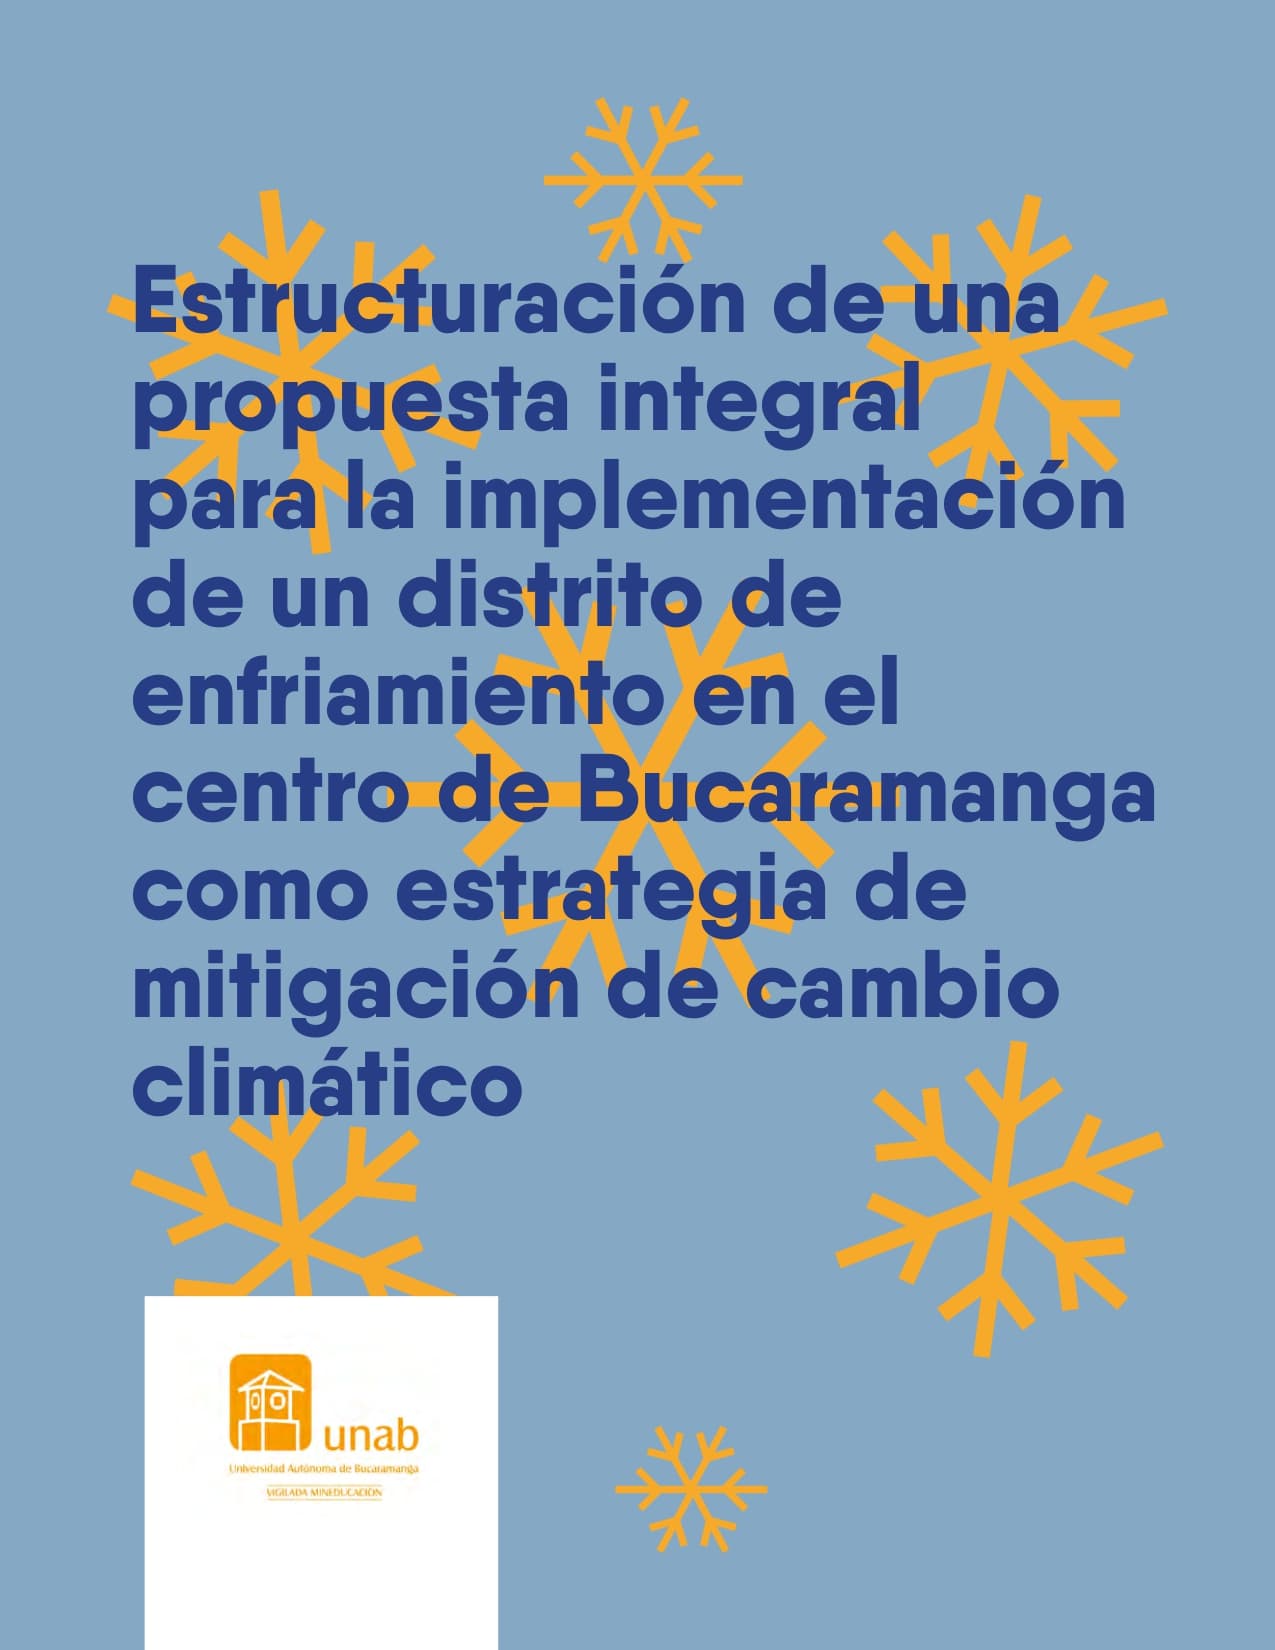 Estructuración de una propuesta integral para la implementación de un distrito de enfriamiento en el centro de Bucaramanga como estrategia de mitigación de cambio climático